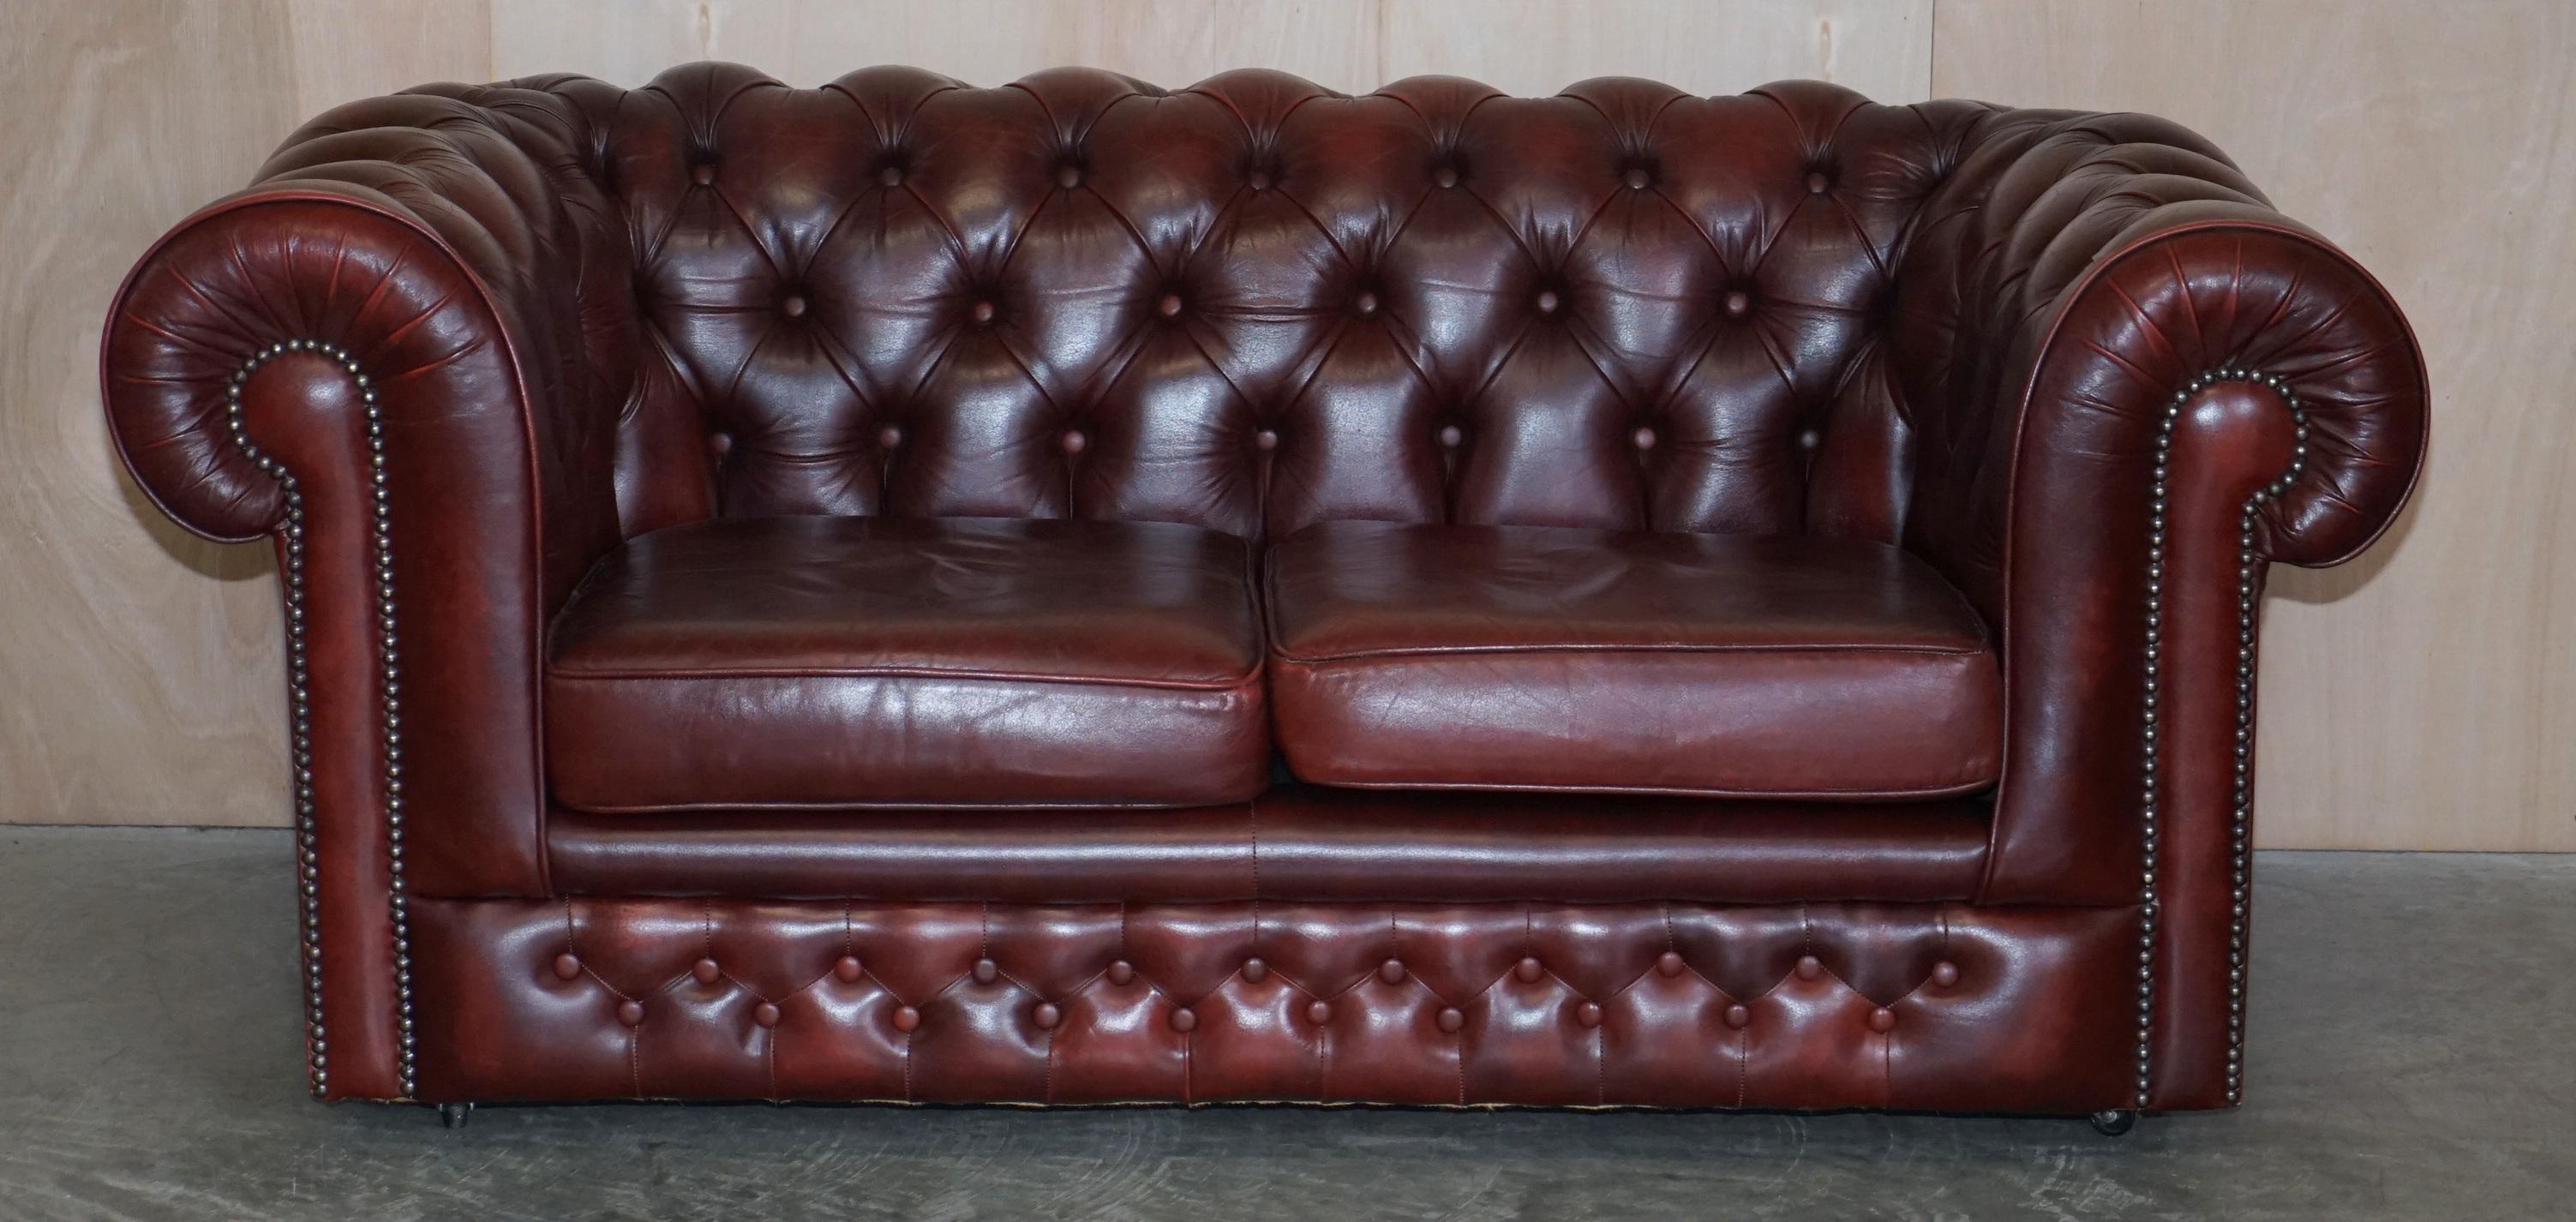 Nous sommes ravis de vous proposer ce superbe canapé club Chesterfield vintage en cuir Oxblood qui fait partie d'une suite

Ce canapé fait partie d'une suite comme mentionné, j'ai la paire de fauteuils assortis listés sous mes autres